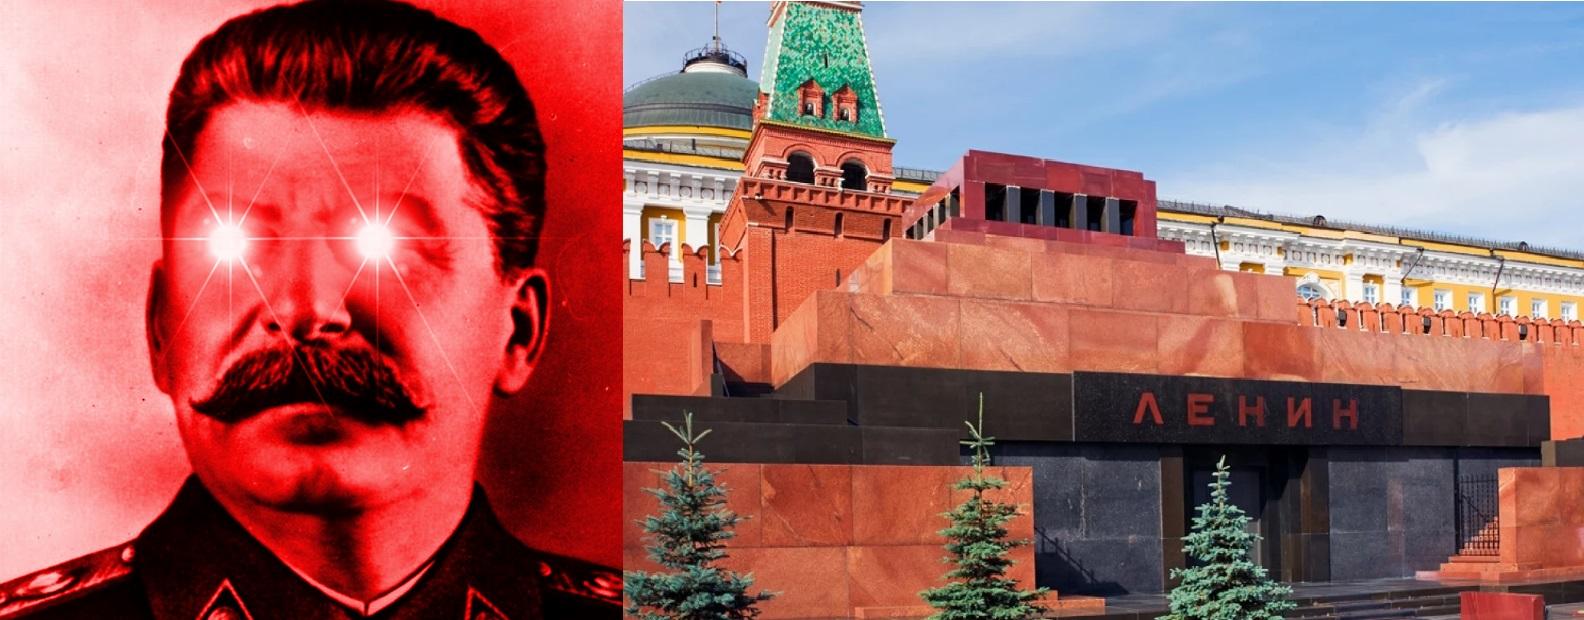 Процесс десталинизации начался в. Мавзолей в.и Ленина на красной площади в Москве. Сталинизм и десталинизация. Десталинизация общества.